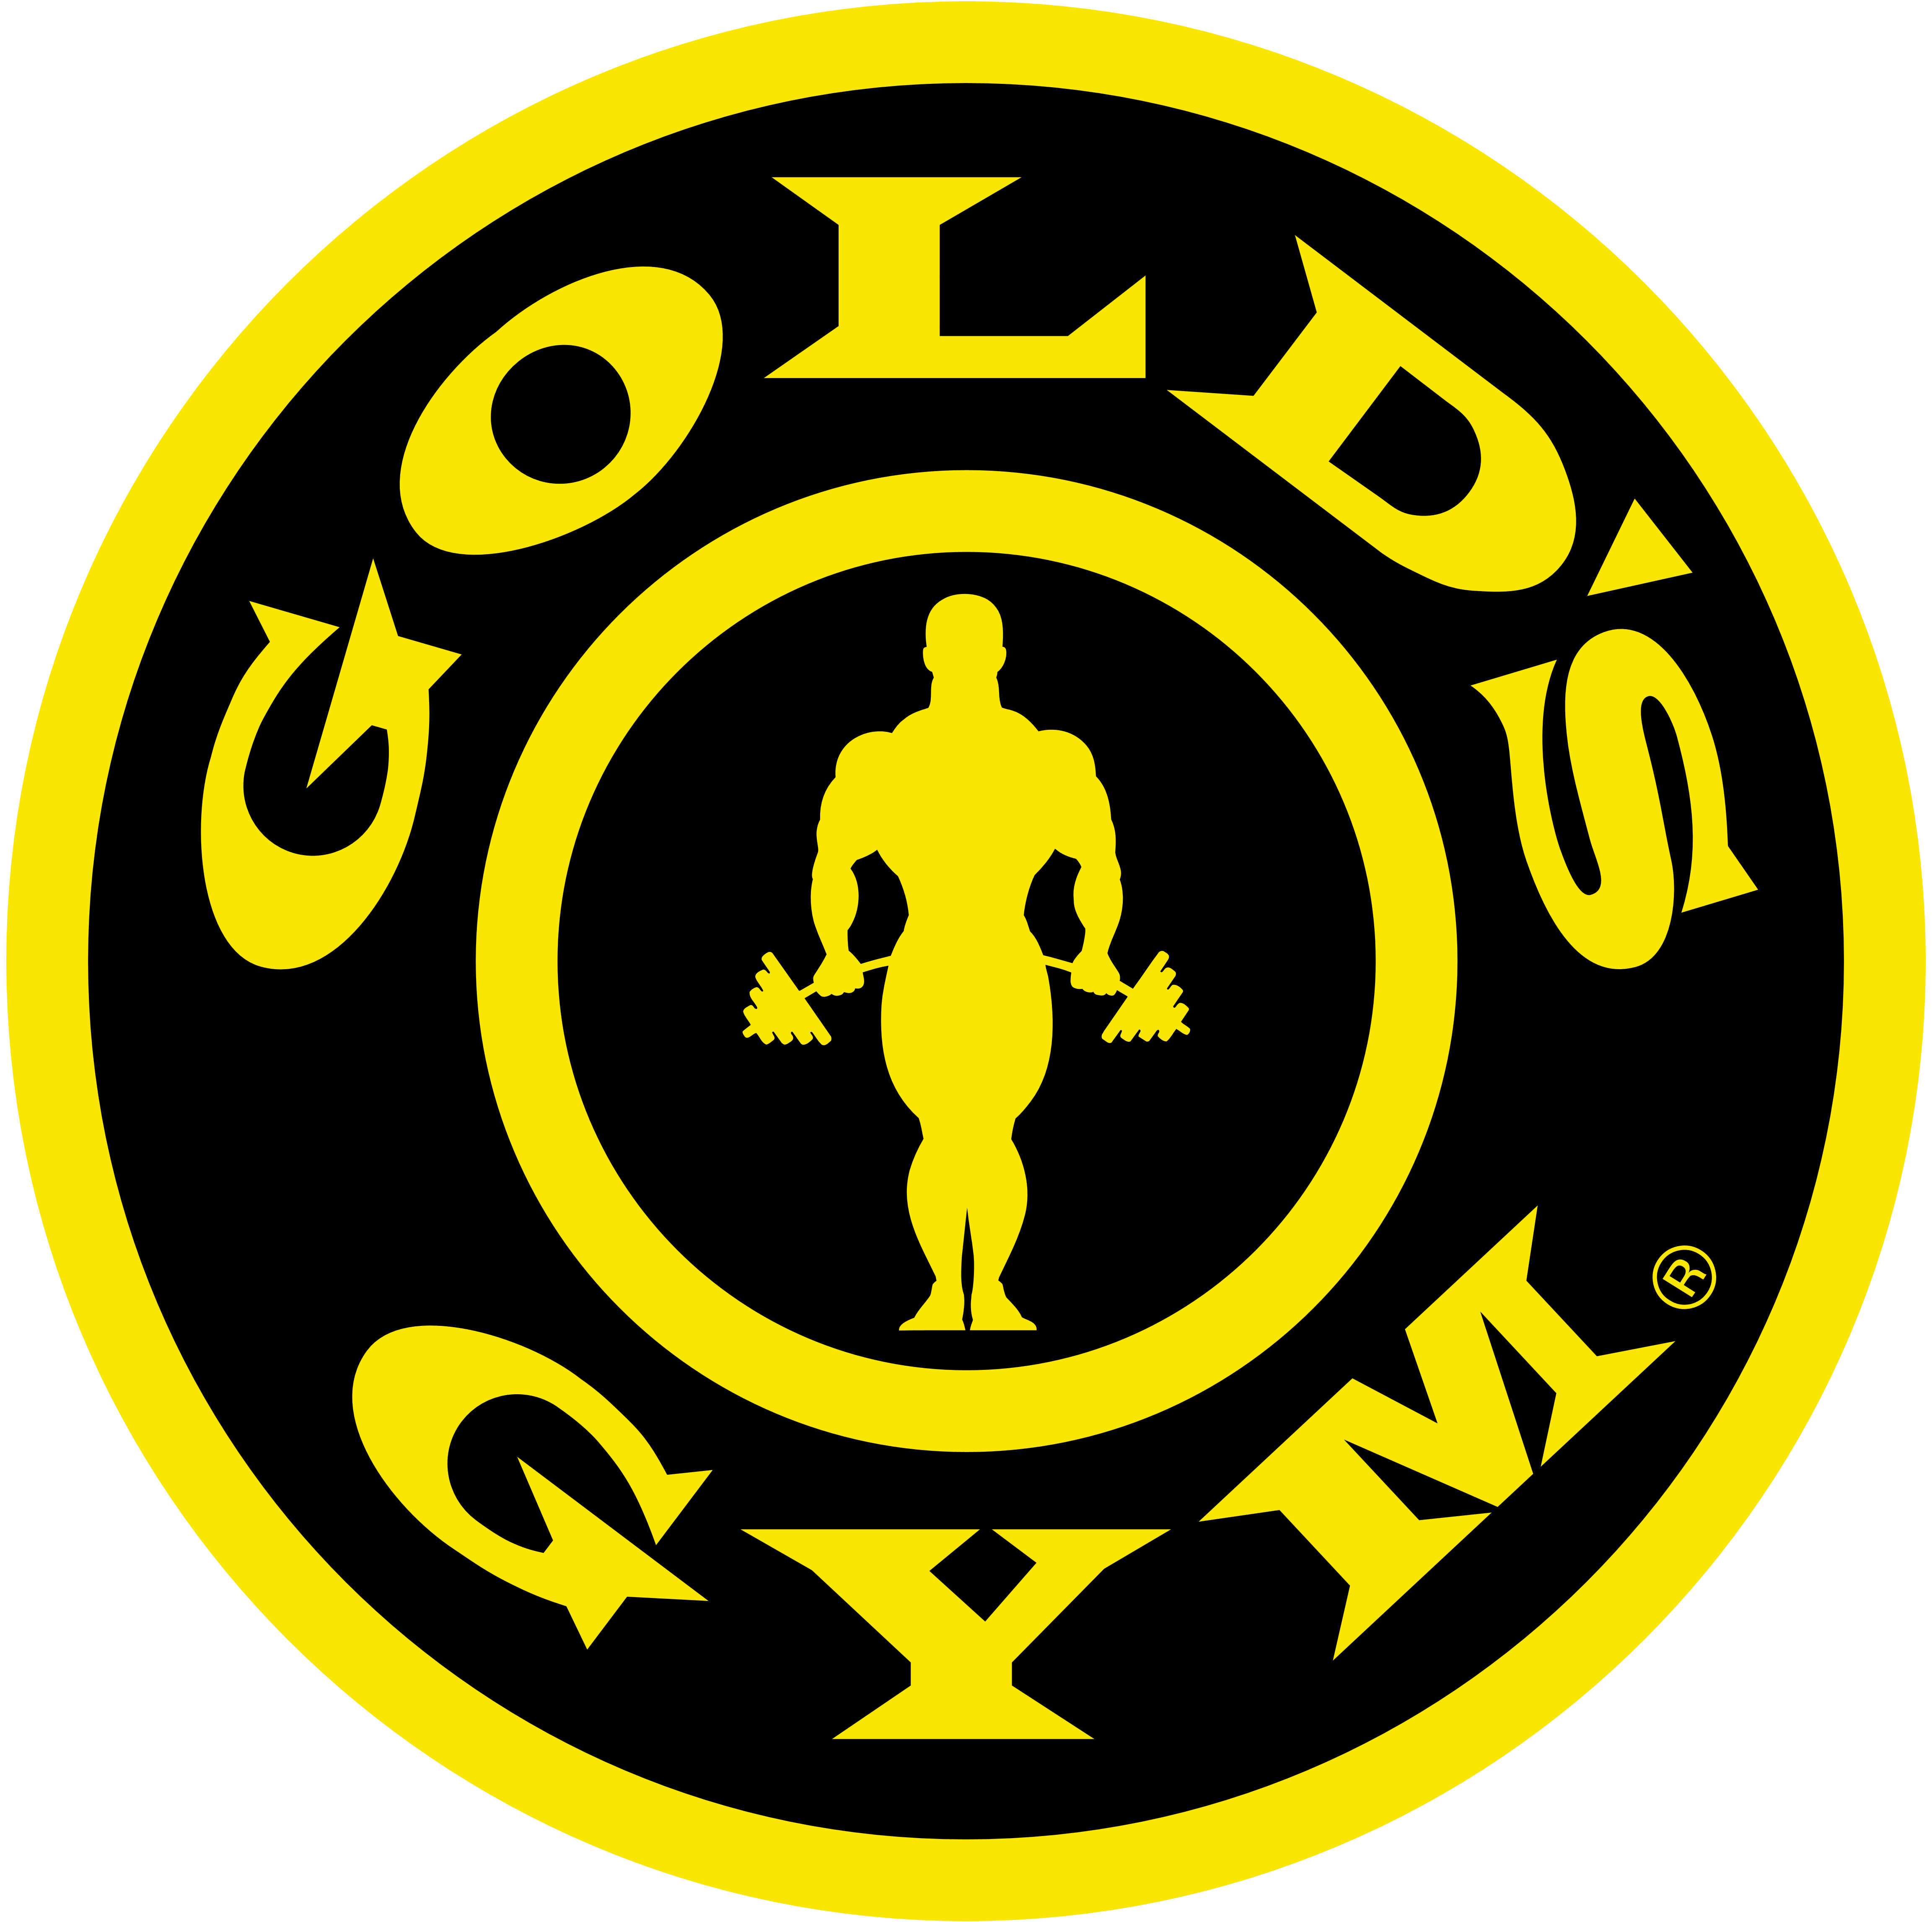 Gold S Gym Logos Download